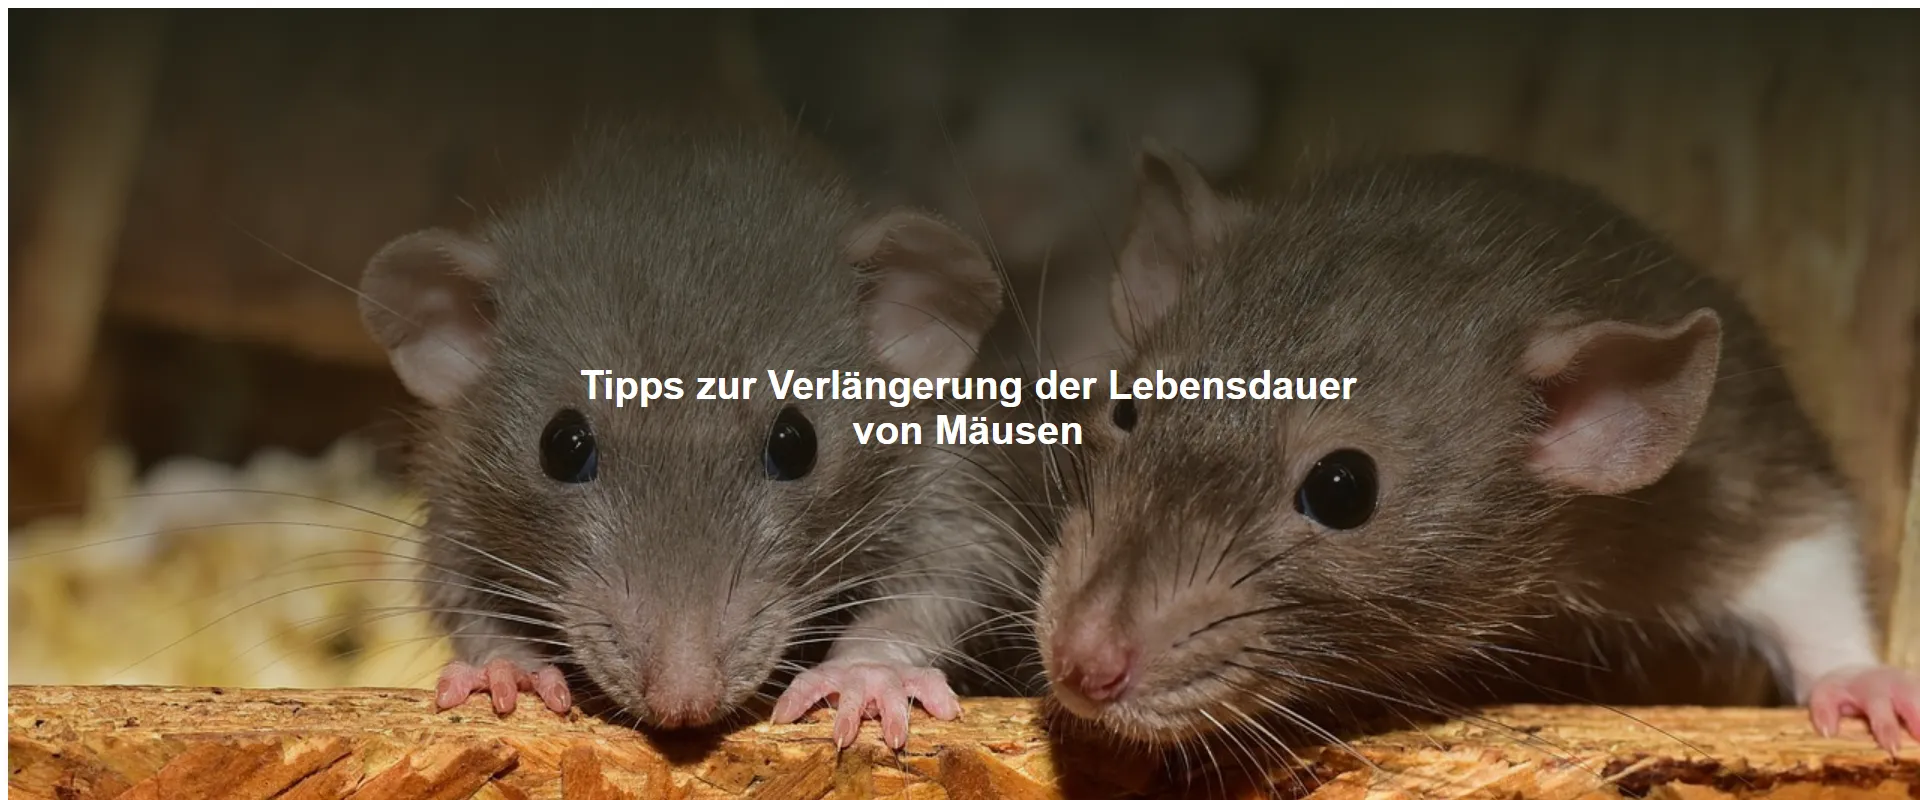 Tipps zur Verlängerung der Lebensdauer von Mäusen